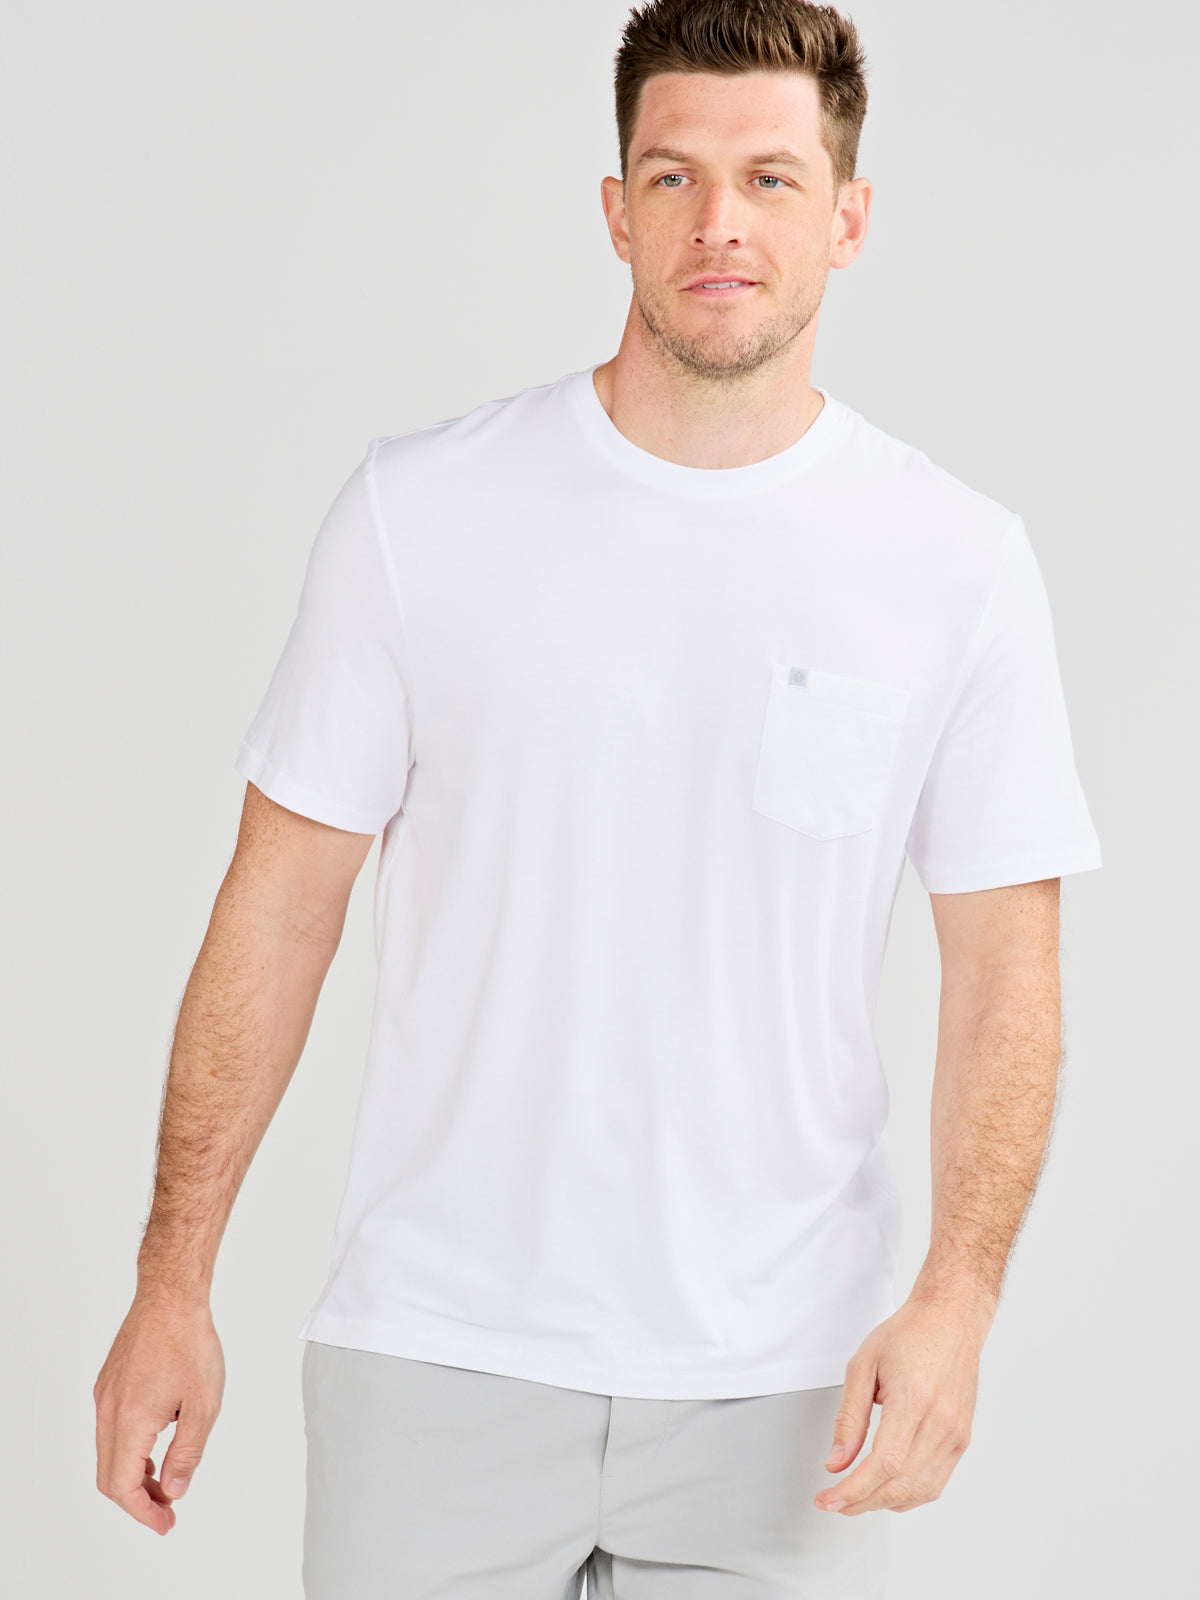 Tasc Men's Seaside Pocket T-Shirt